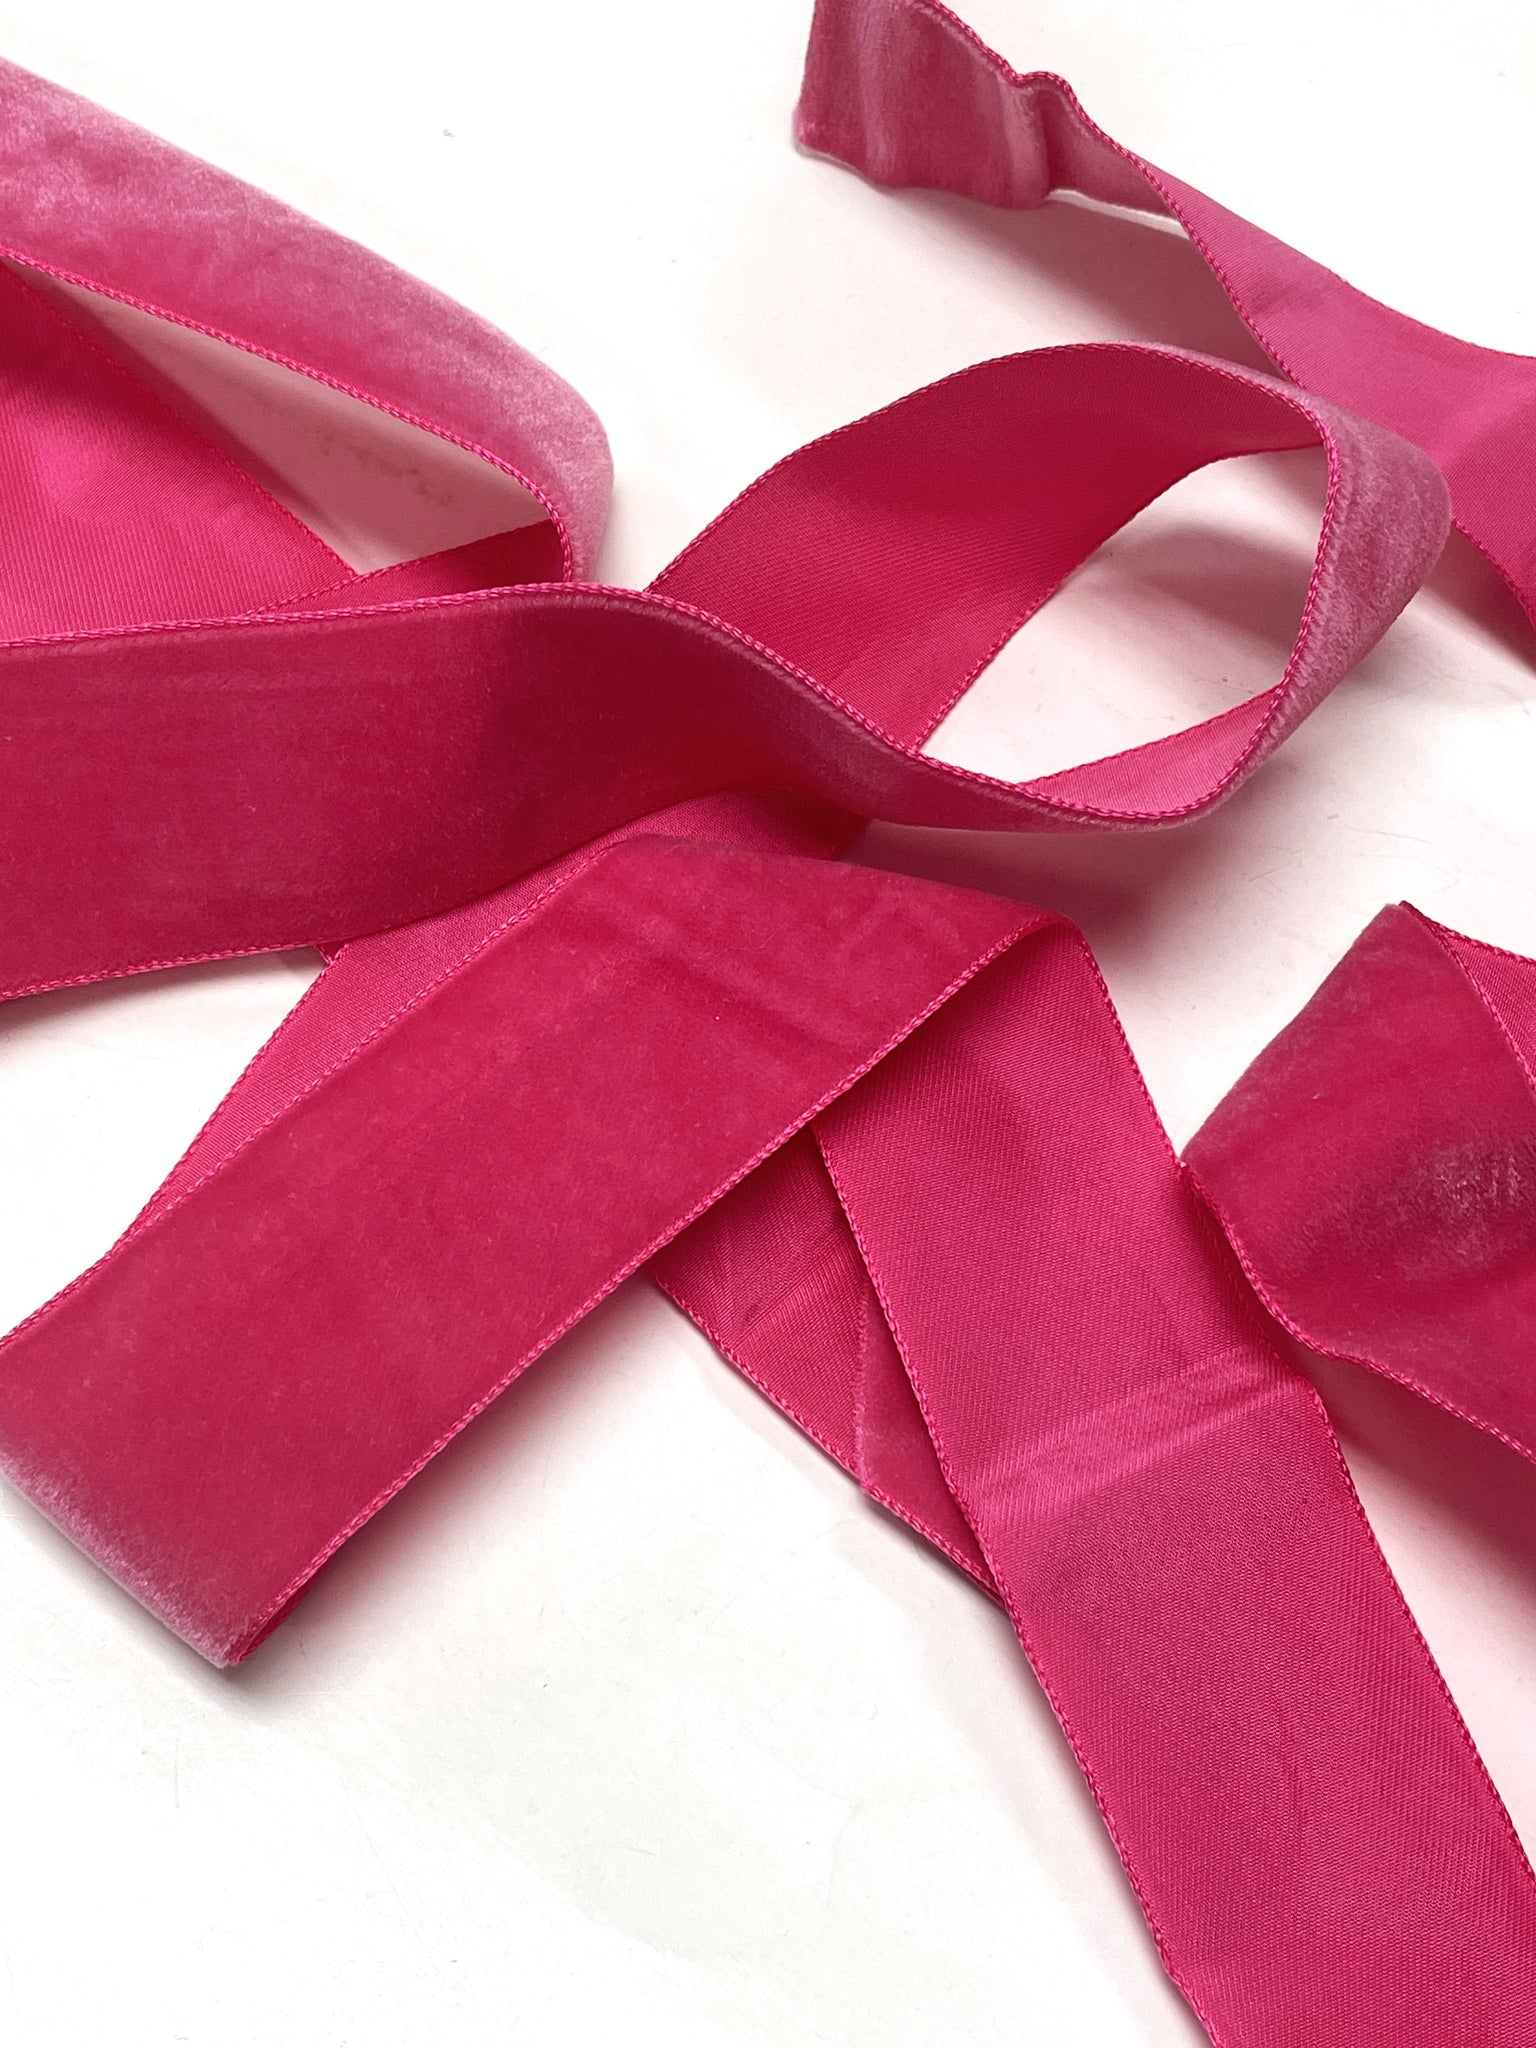 2 1/4 YD Polyester Velvet Ribbon - Hot Pink